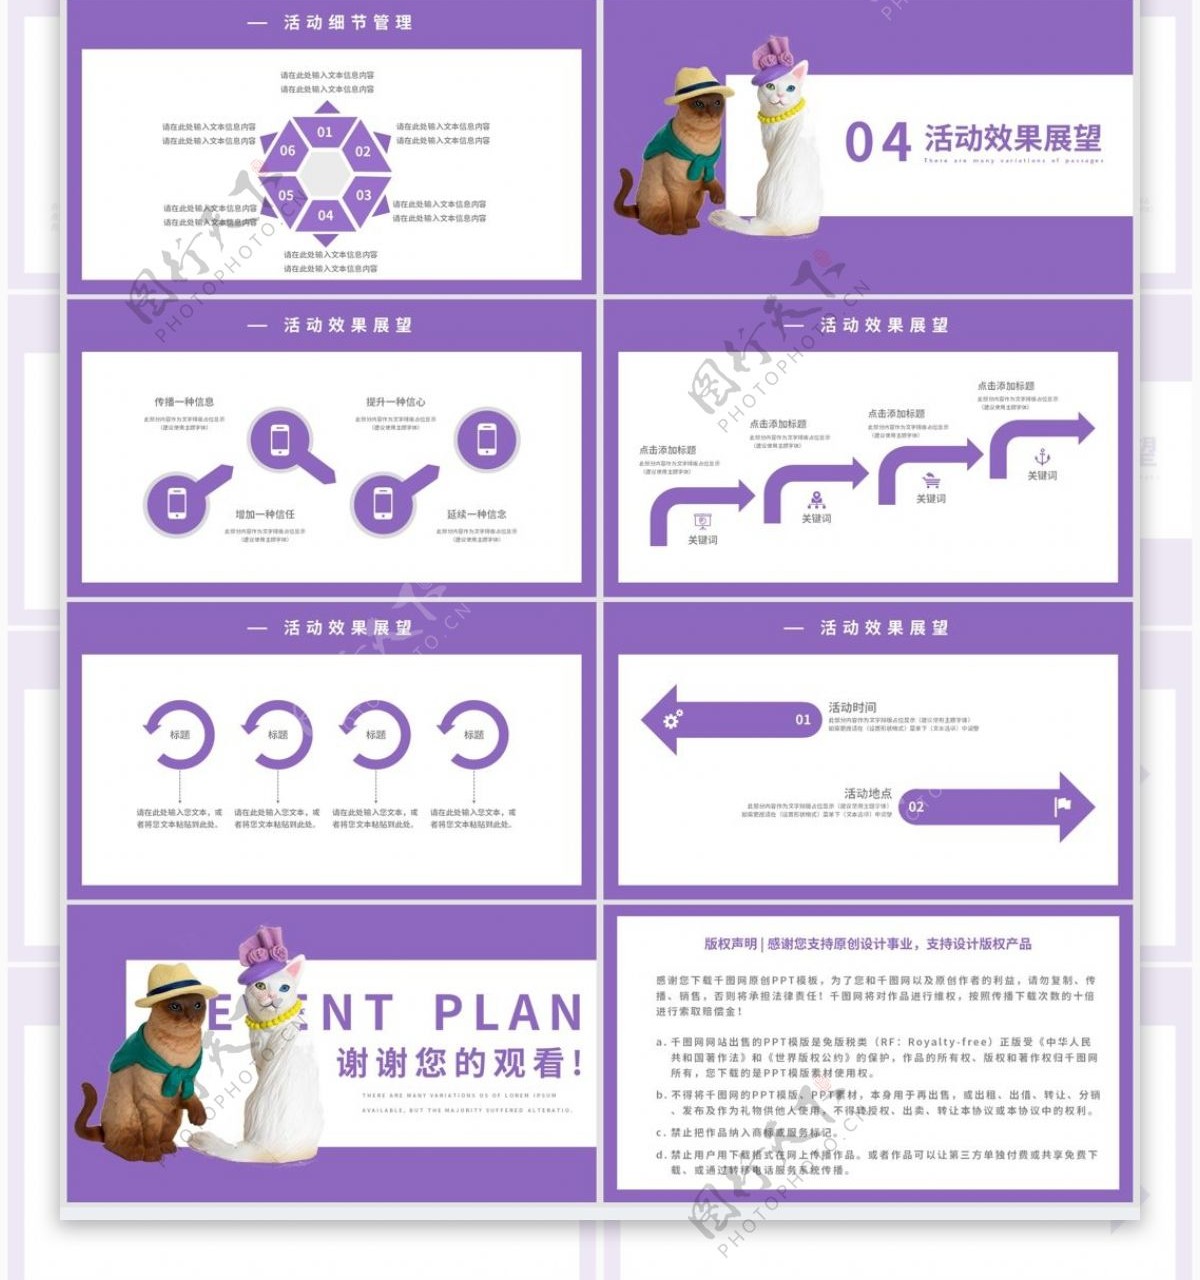 紫色简约天猫国际玩具节营销策划PPT模板